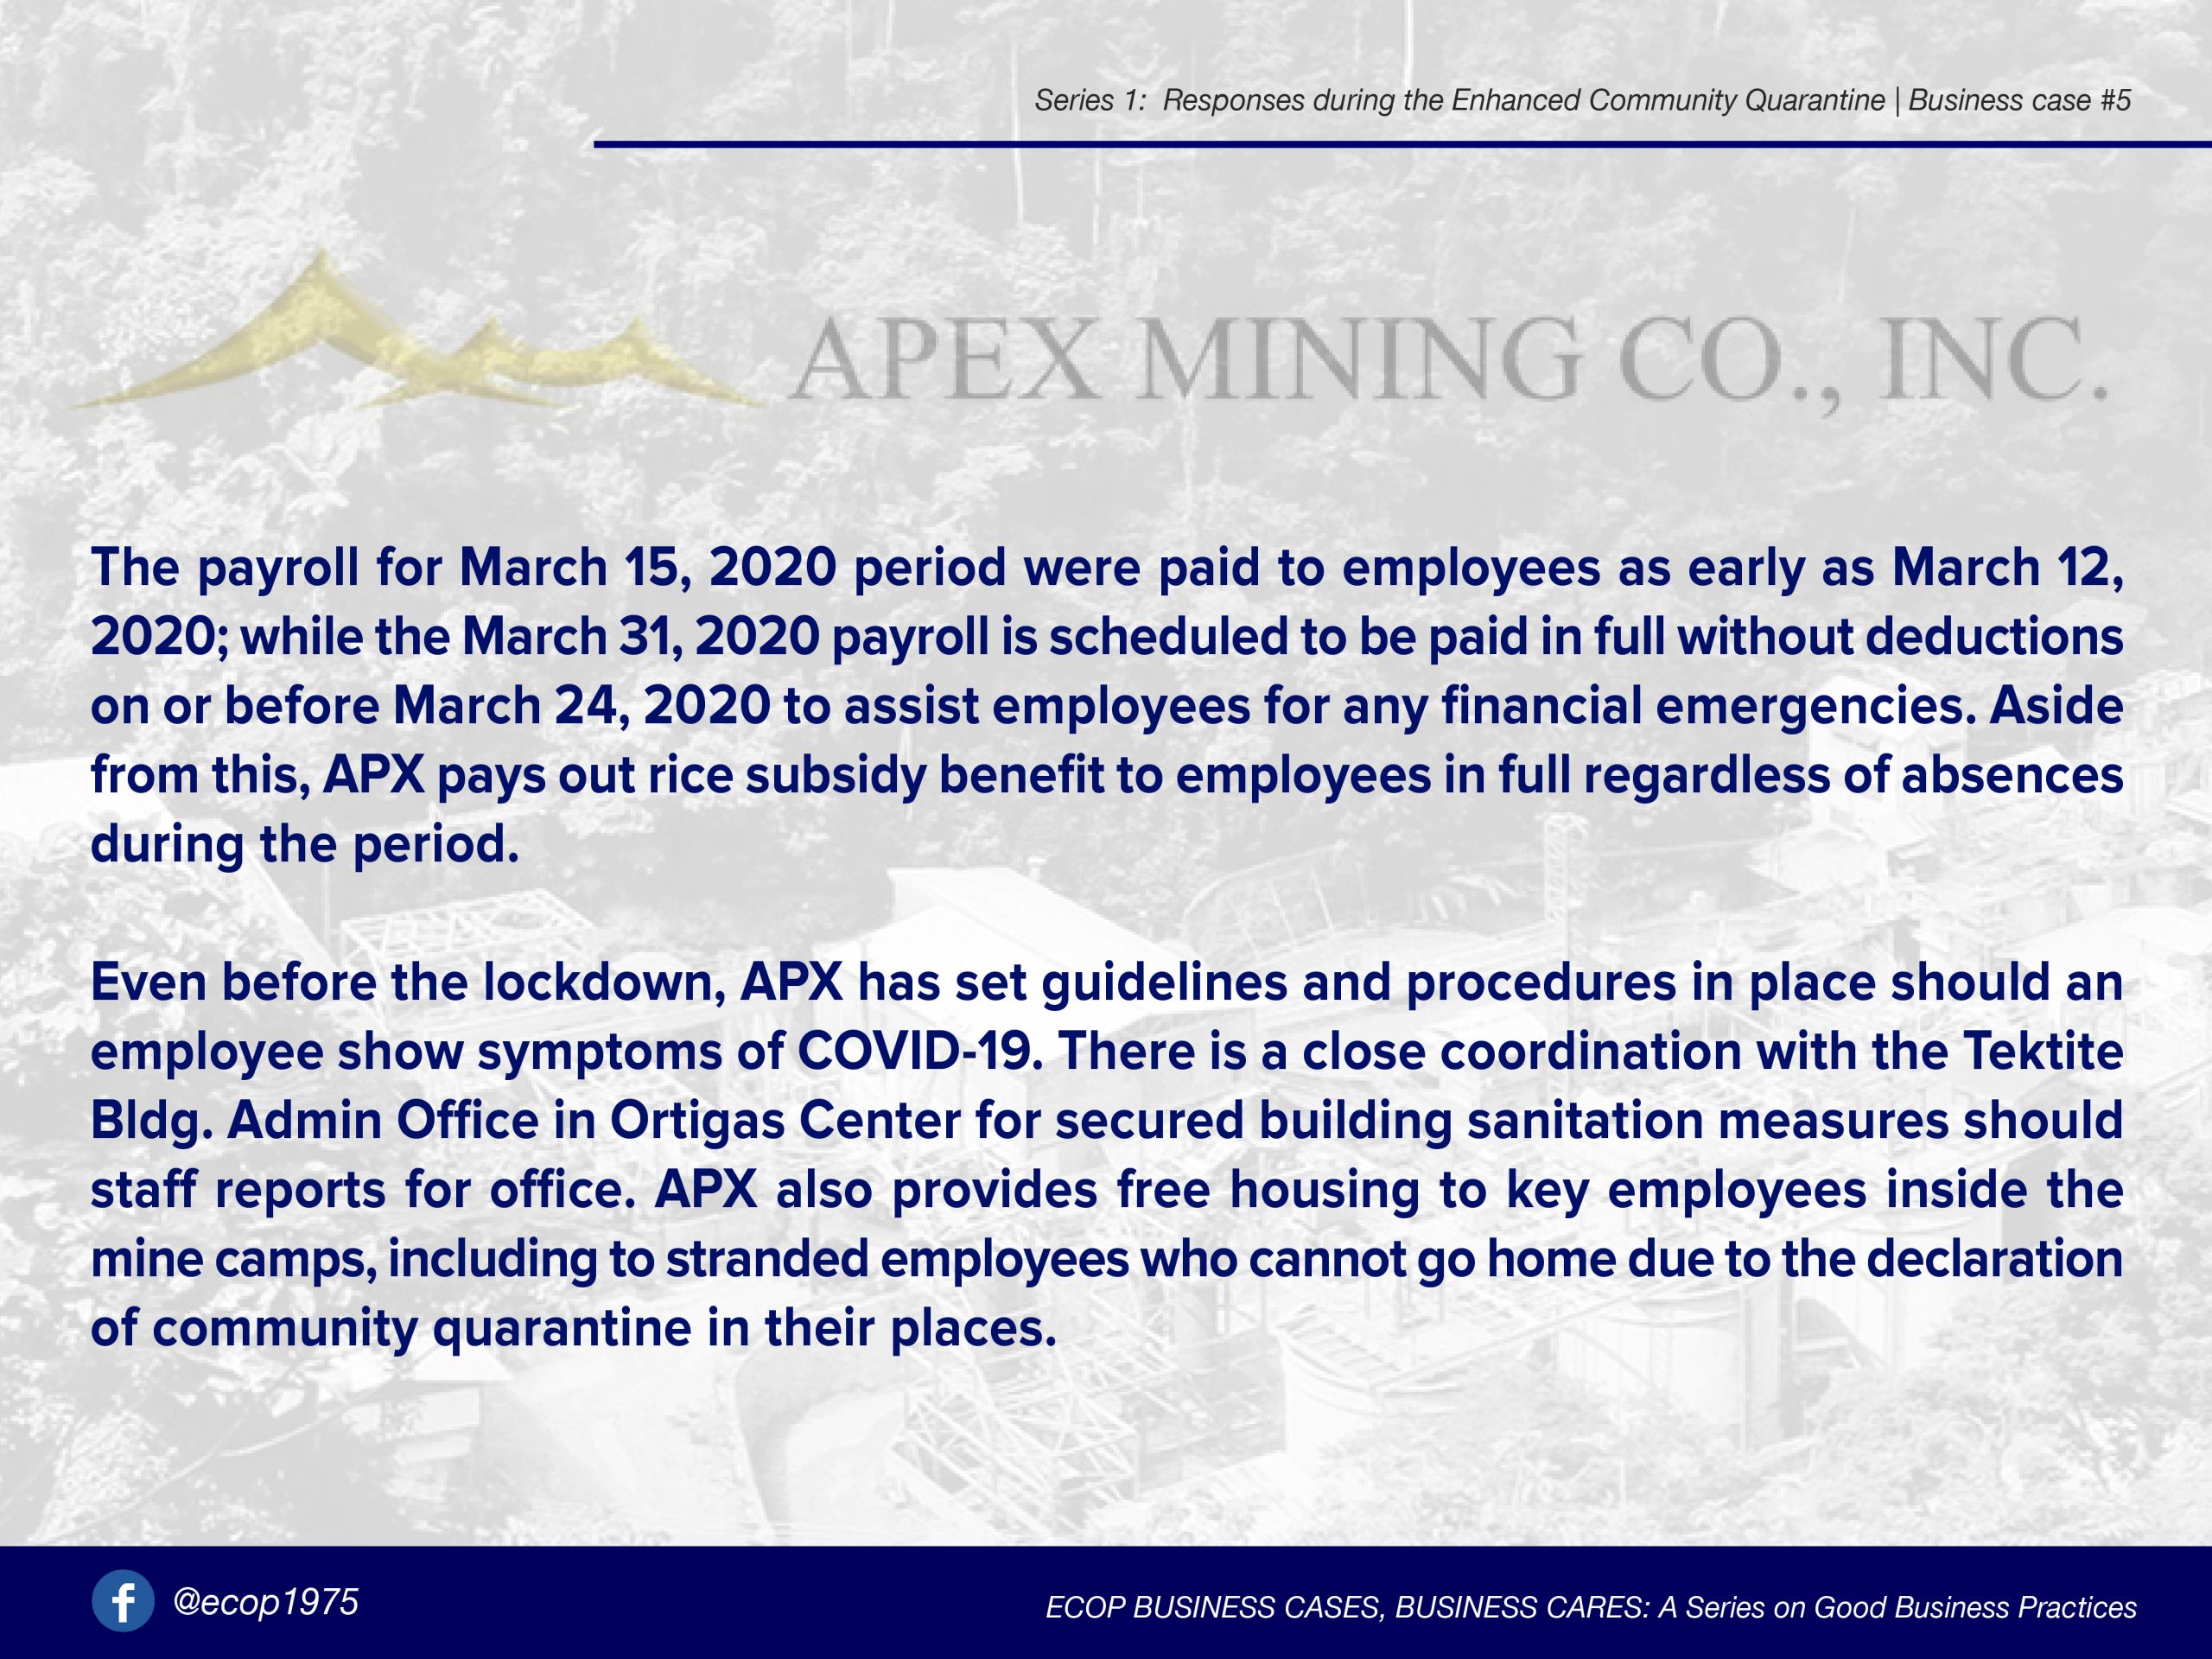 02-Apex Mining Co., Inc. amid the COVID-19 crisis